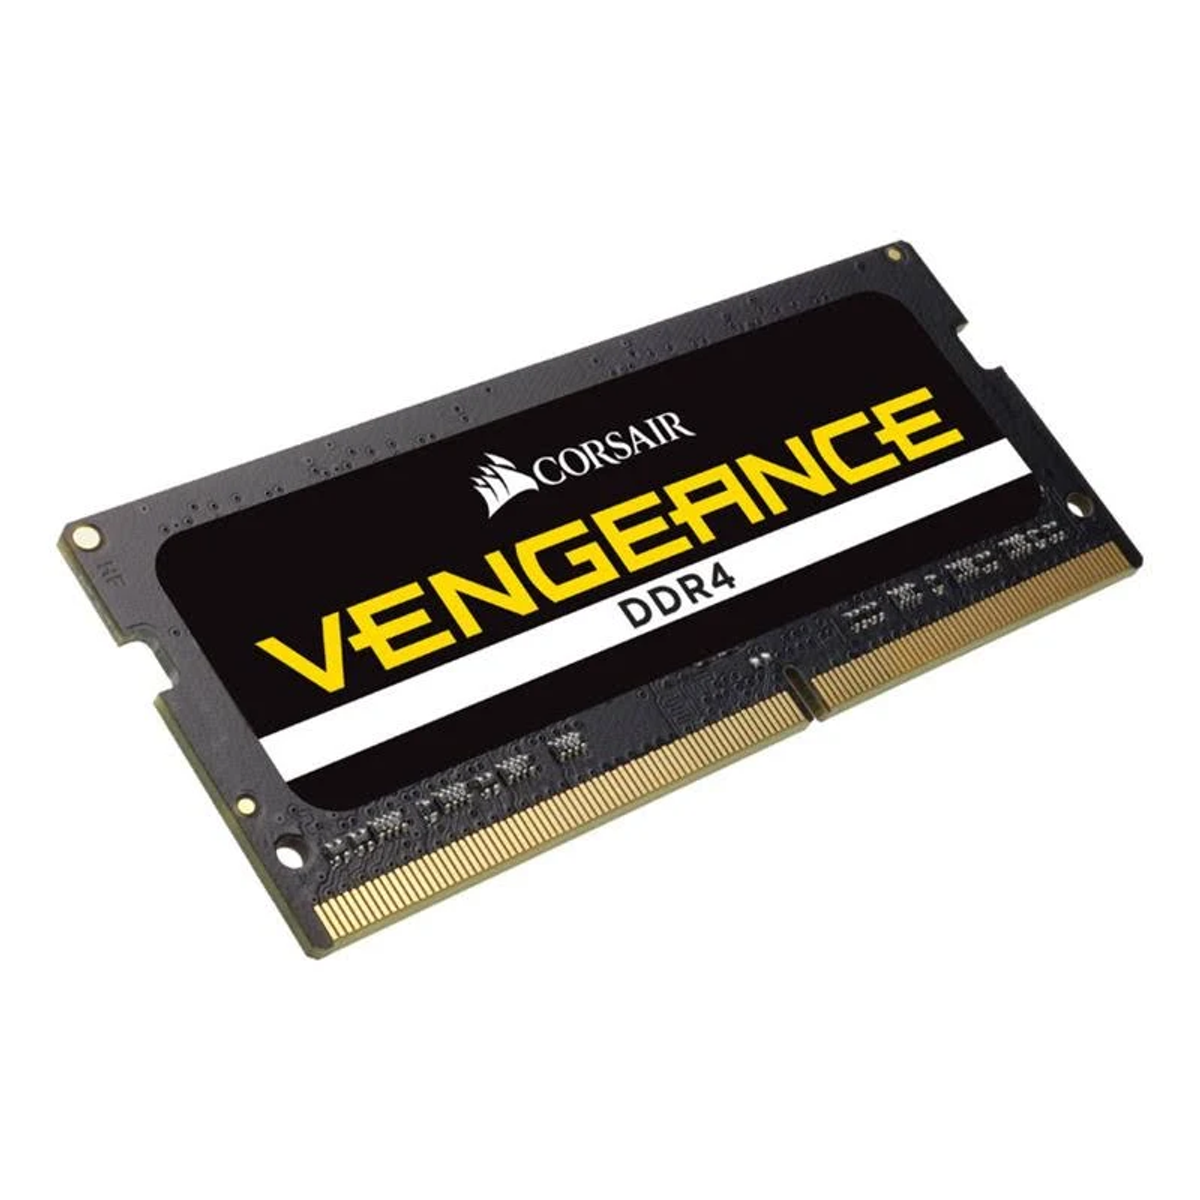 CORSAIR Vengeance DDR4 16 CMSX16GX4M2A2400C16 GB Arbeitsspeicher